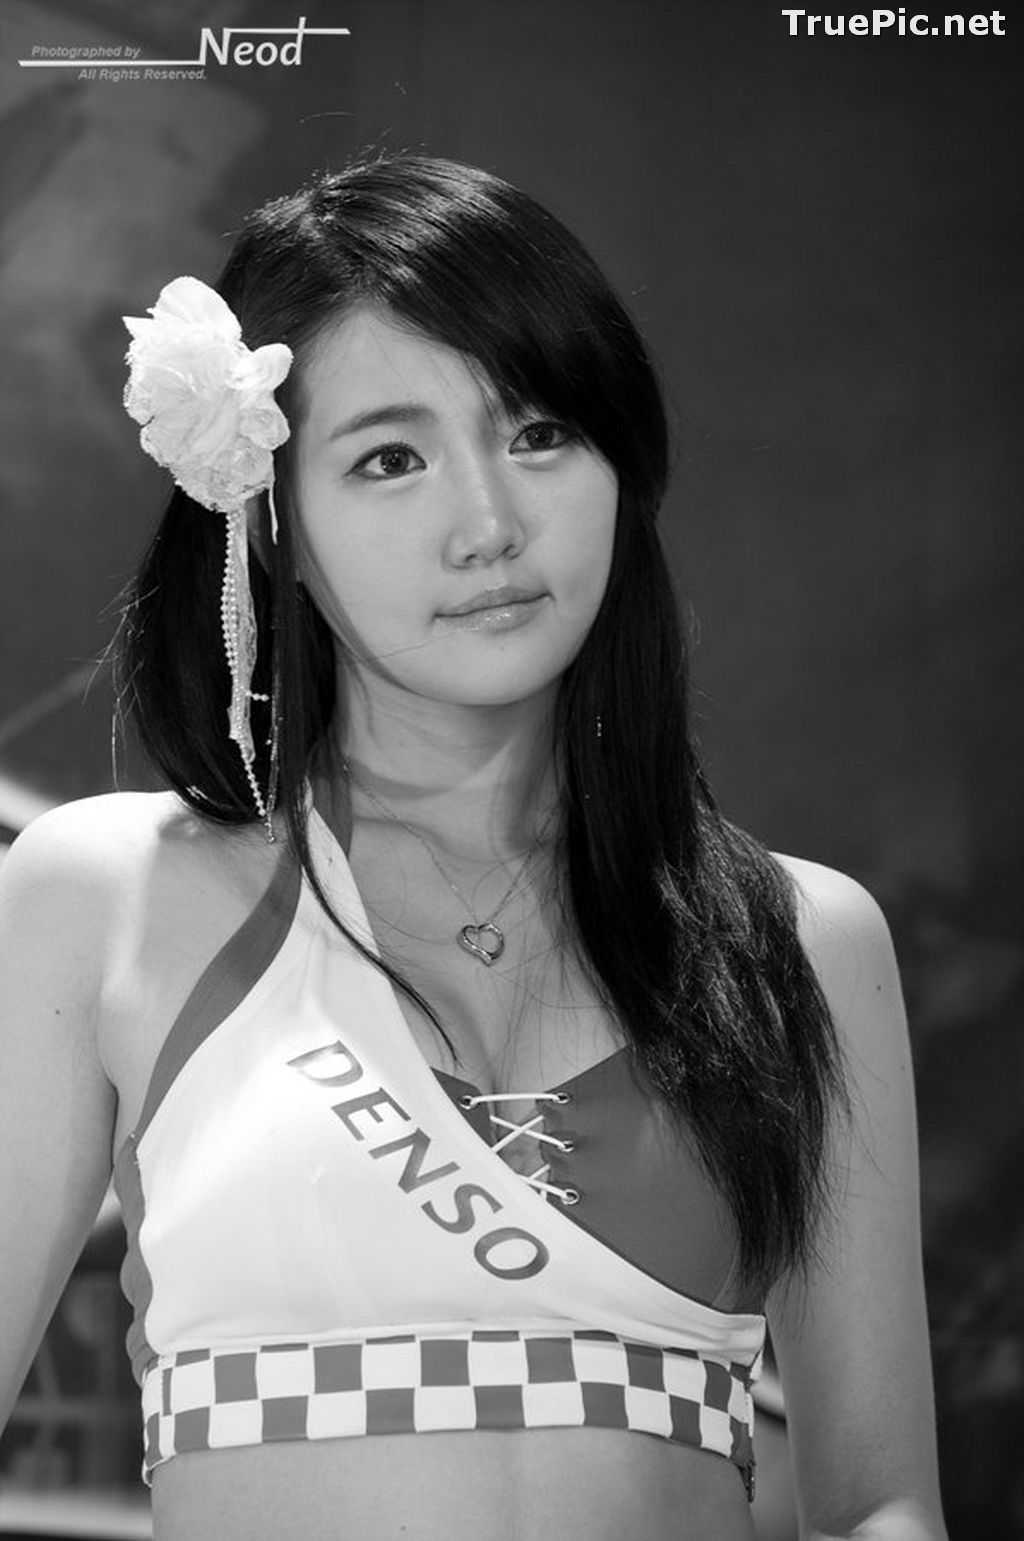 Image Best Beautiful Images Of Korean Racing Queen Han Ga Eun #4 - TruePic.net - Picture-65